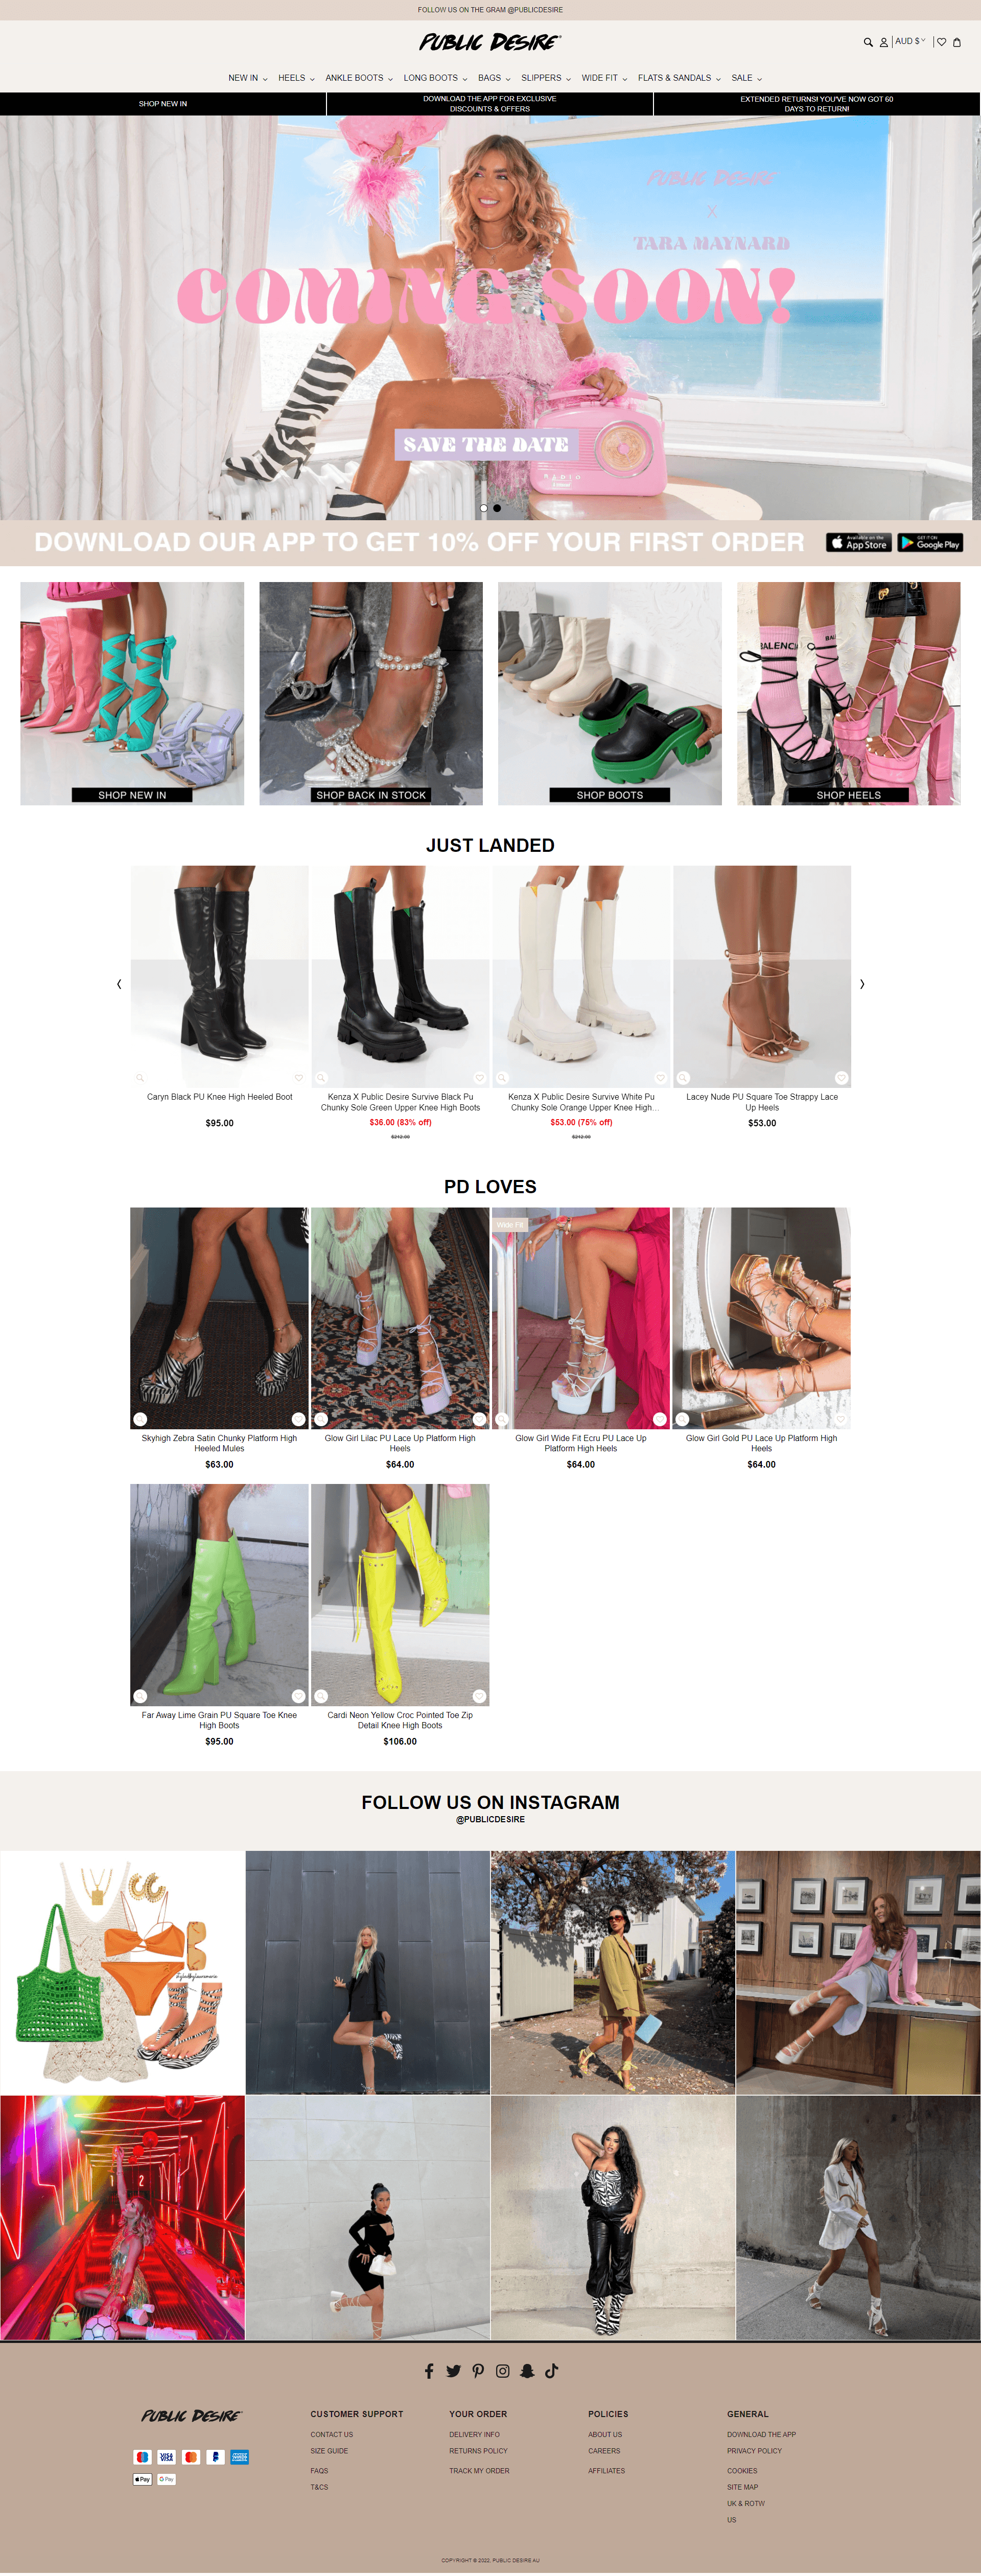 Women-s-Fashion-Boots-Shoes-amp-Footwear-Public-Desire-–-Public-Desire-AU-full